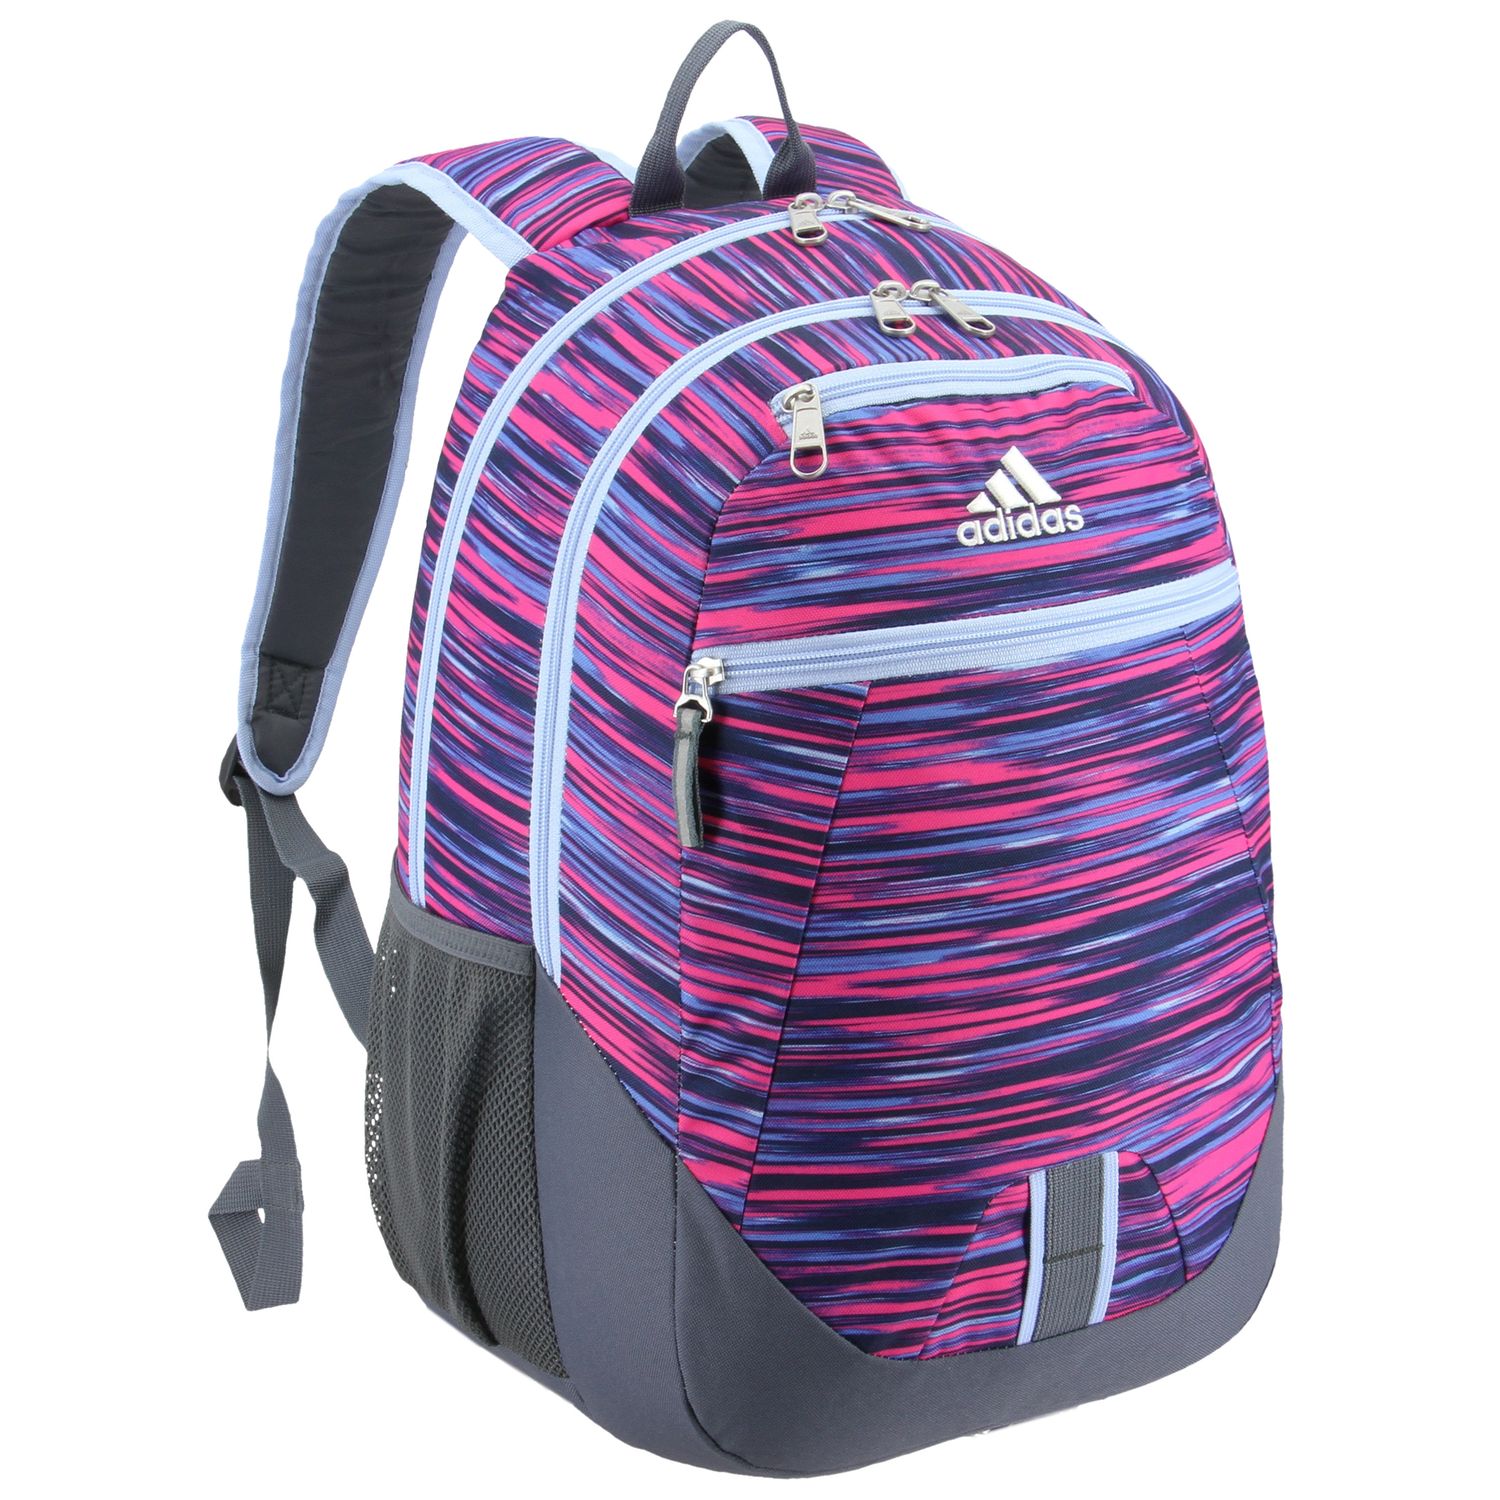 adidas foundation 4 backpack